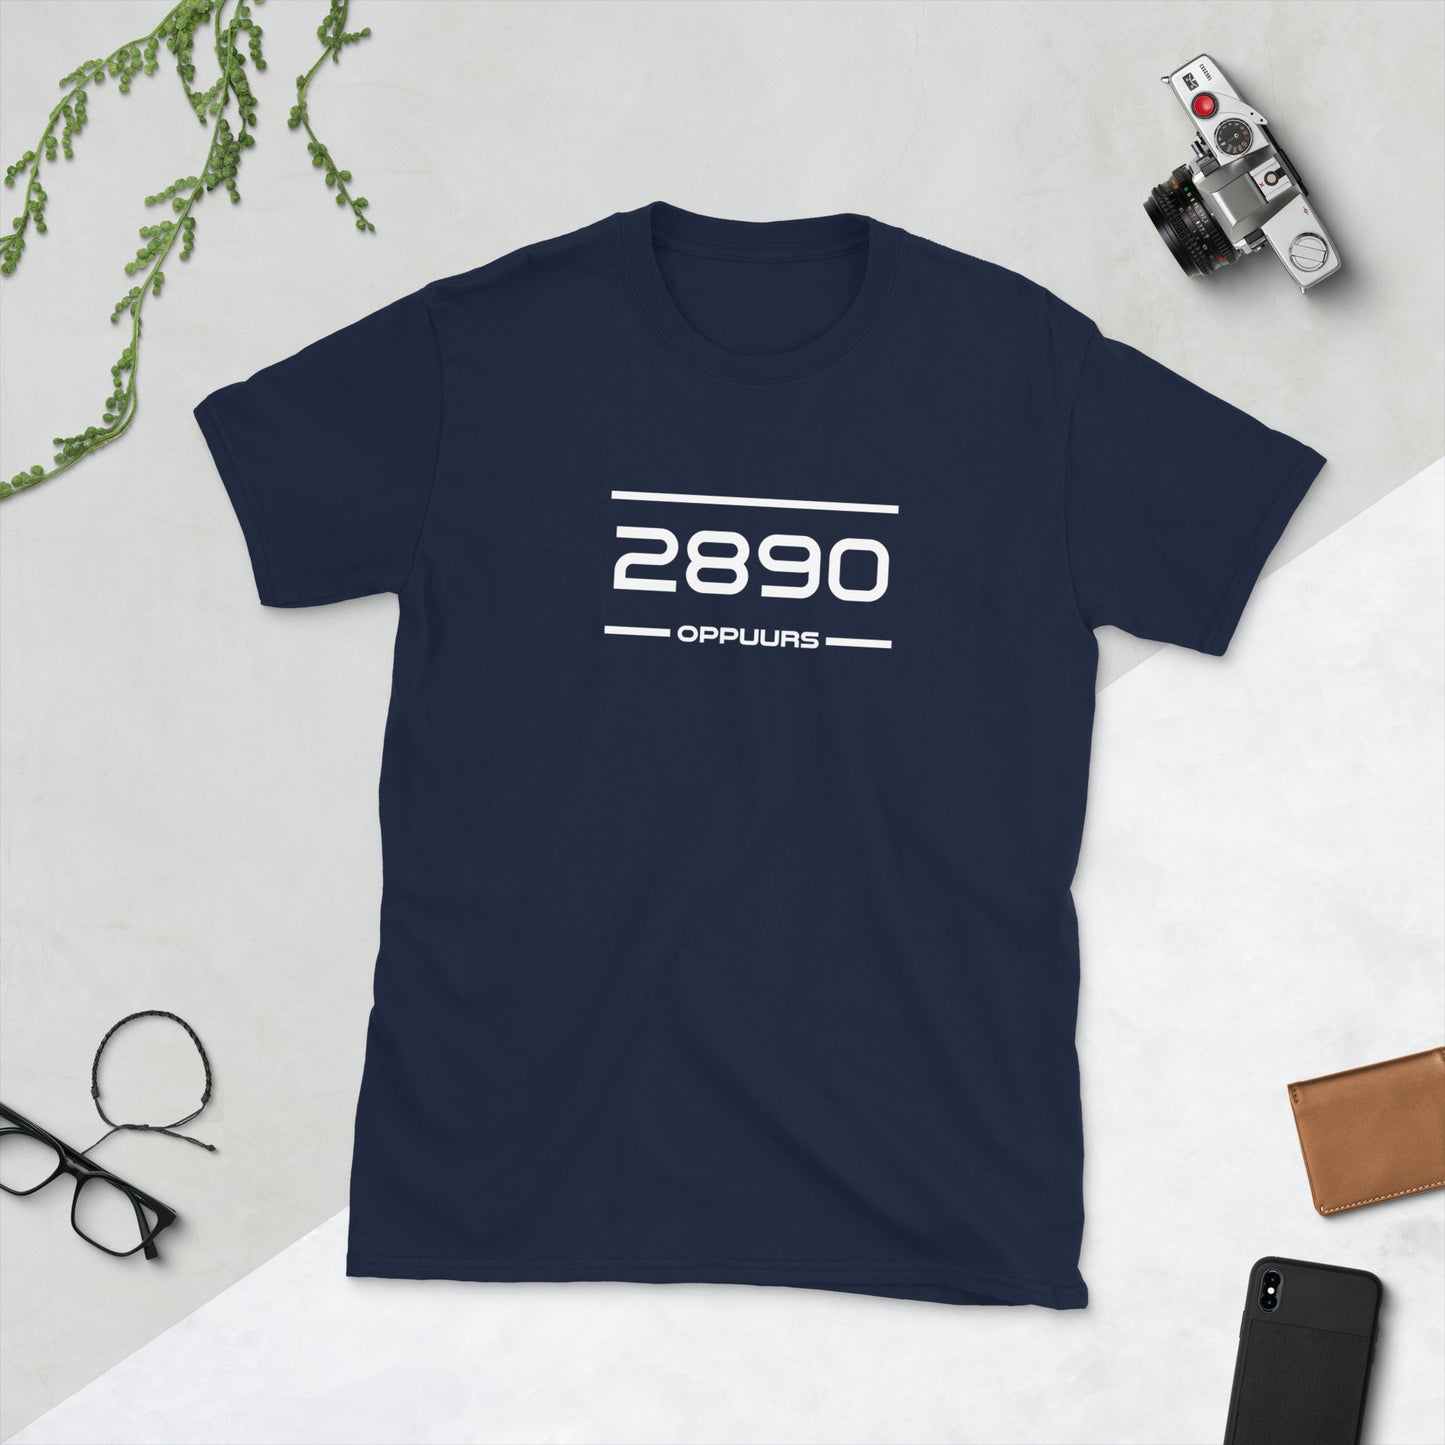 Tshirt - 2890 - Oppuurs